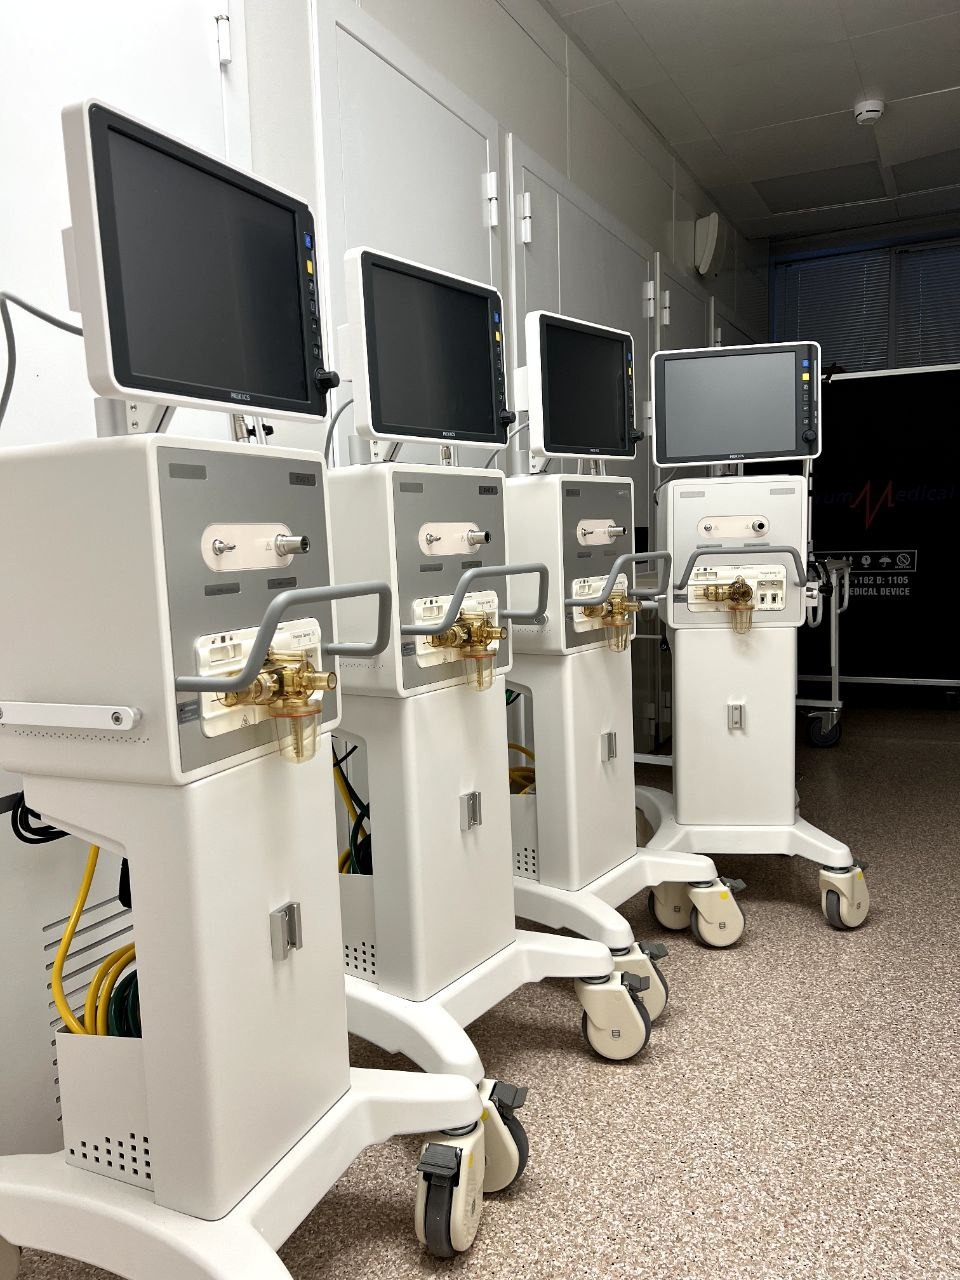 Псковскому перинатальному центру понадобился ремонт аппарата ИВЛ для новорожденных